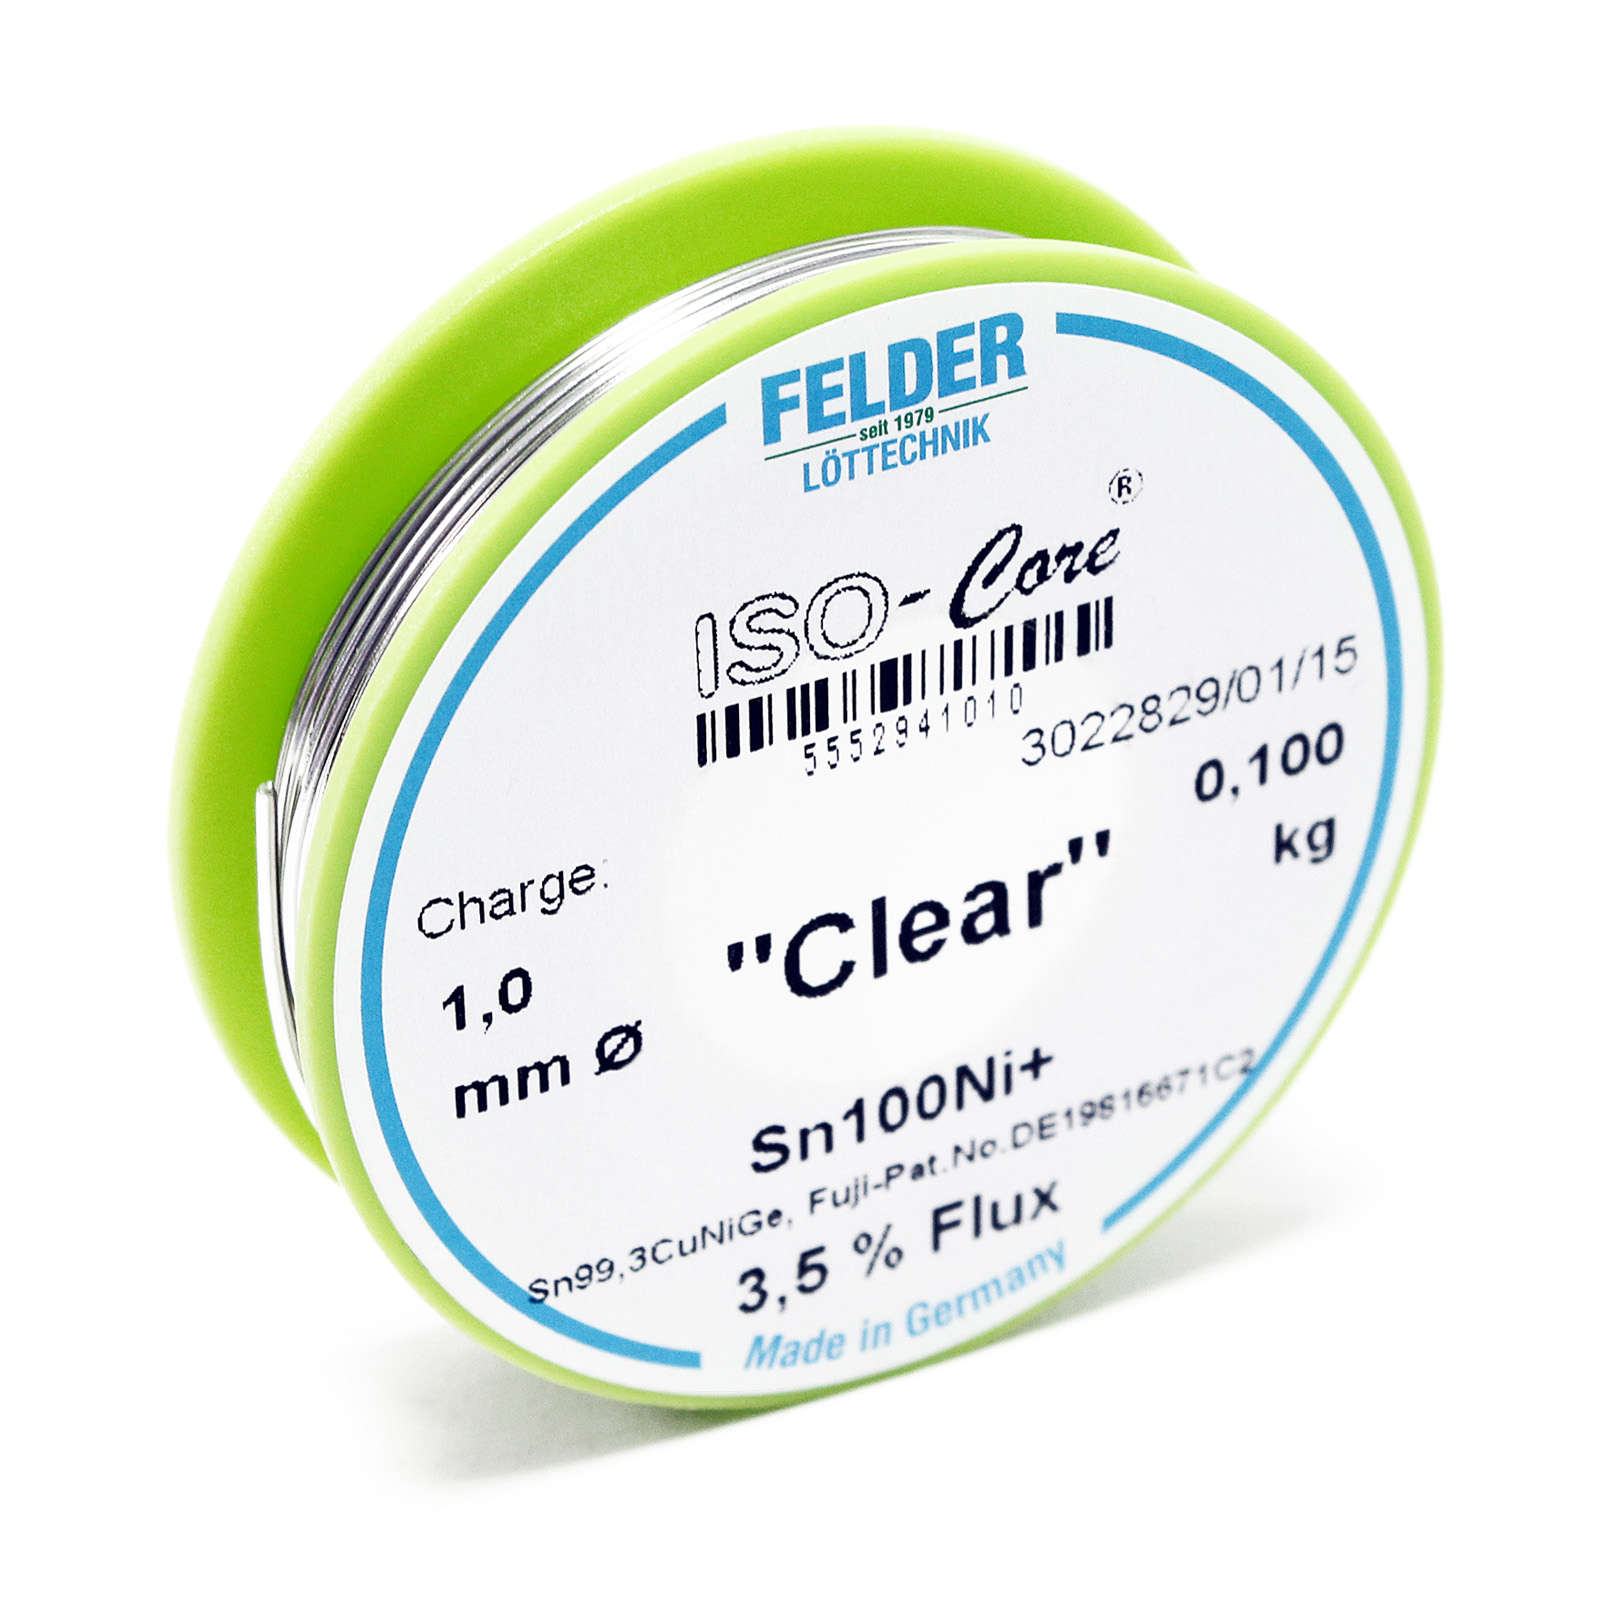 Felder Solder Wire ISO-Core "Clear" Sn100Ni+ Sn99,3CuNiGe 1.0mm 0.1kg